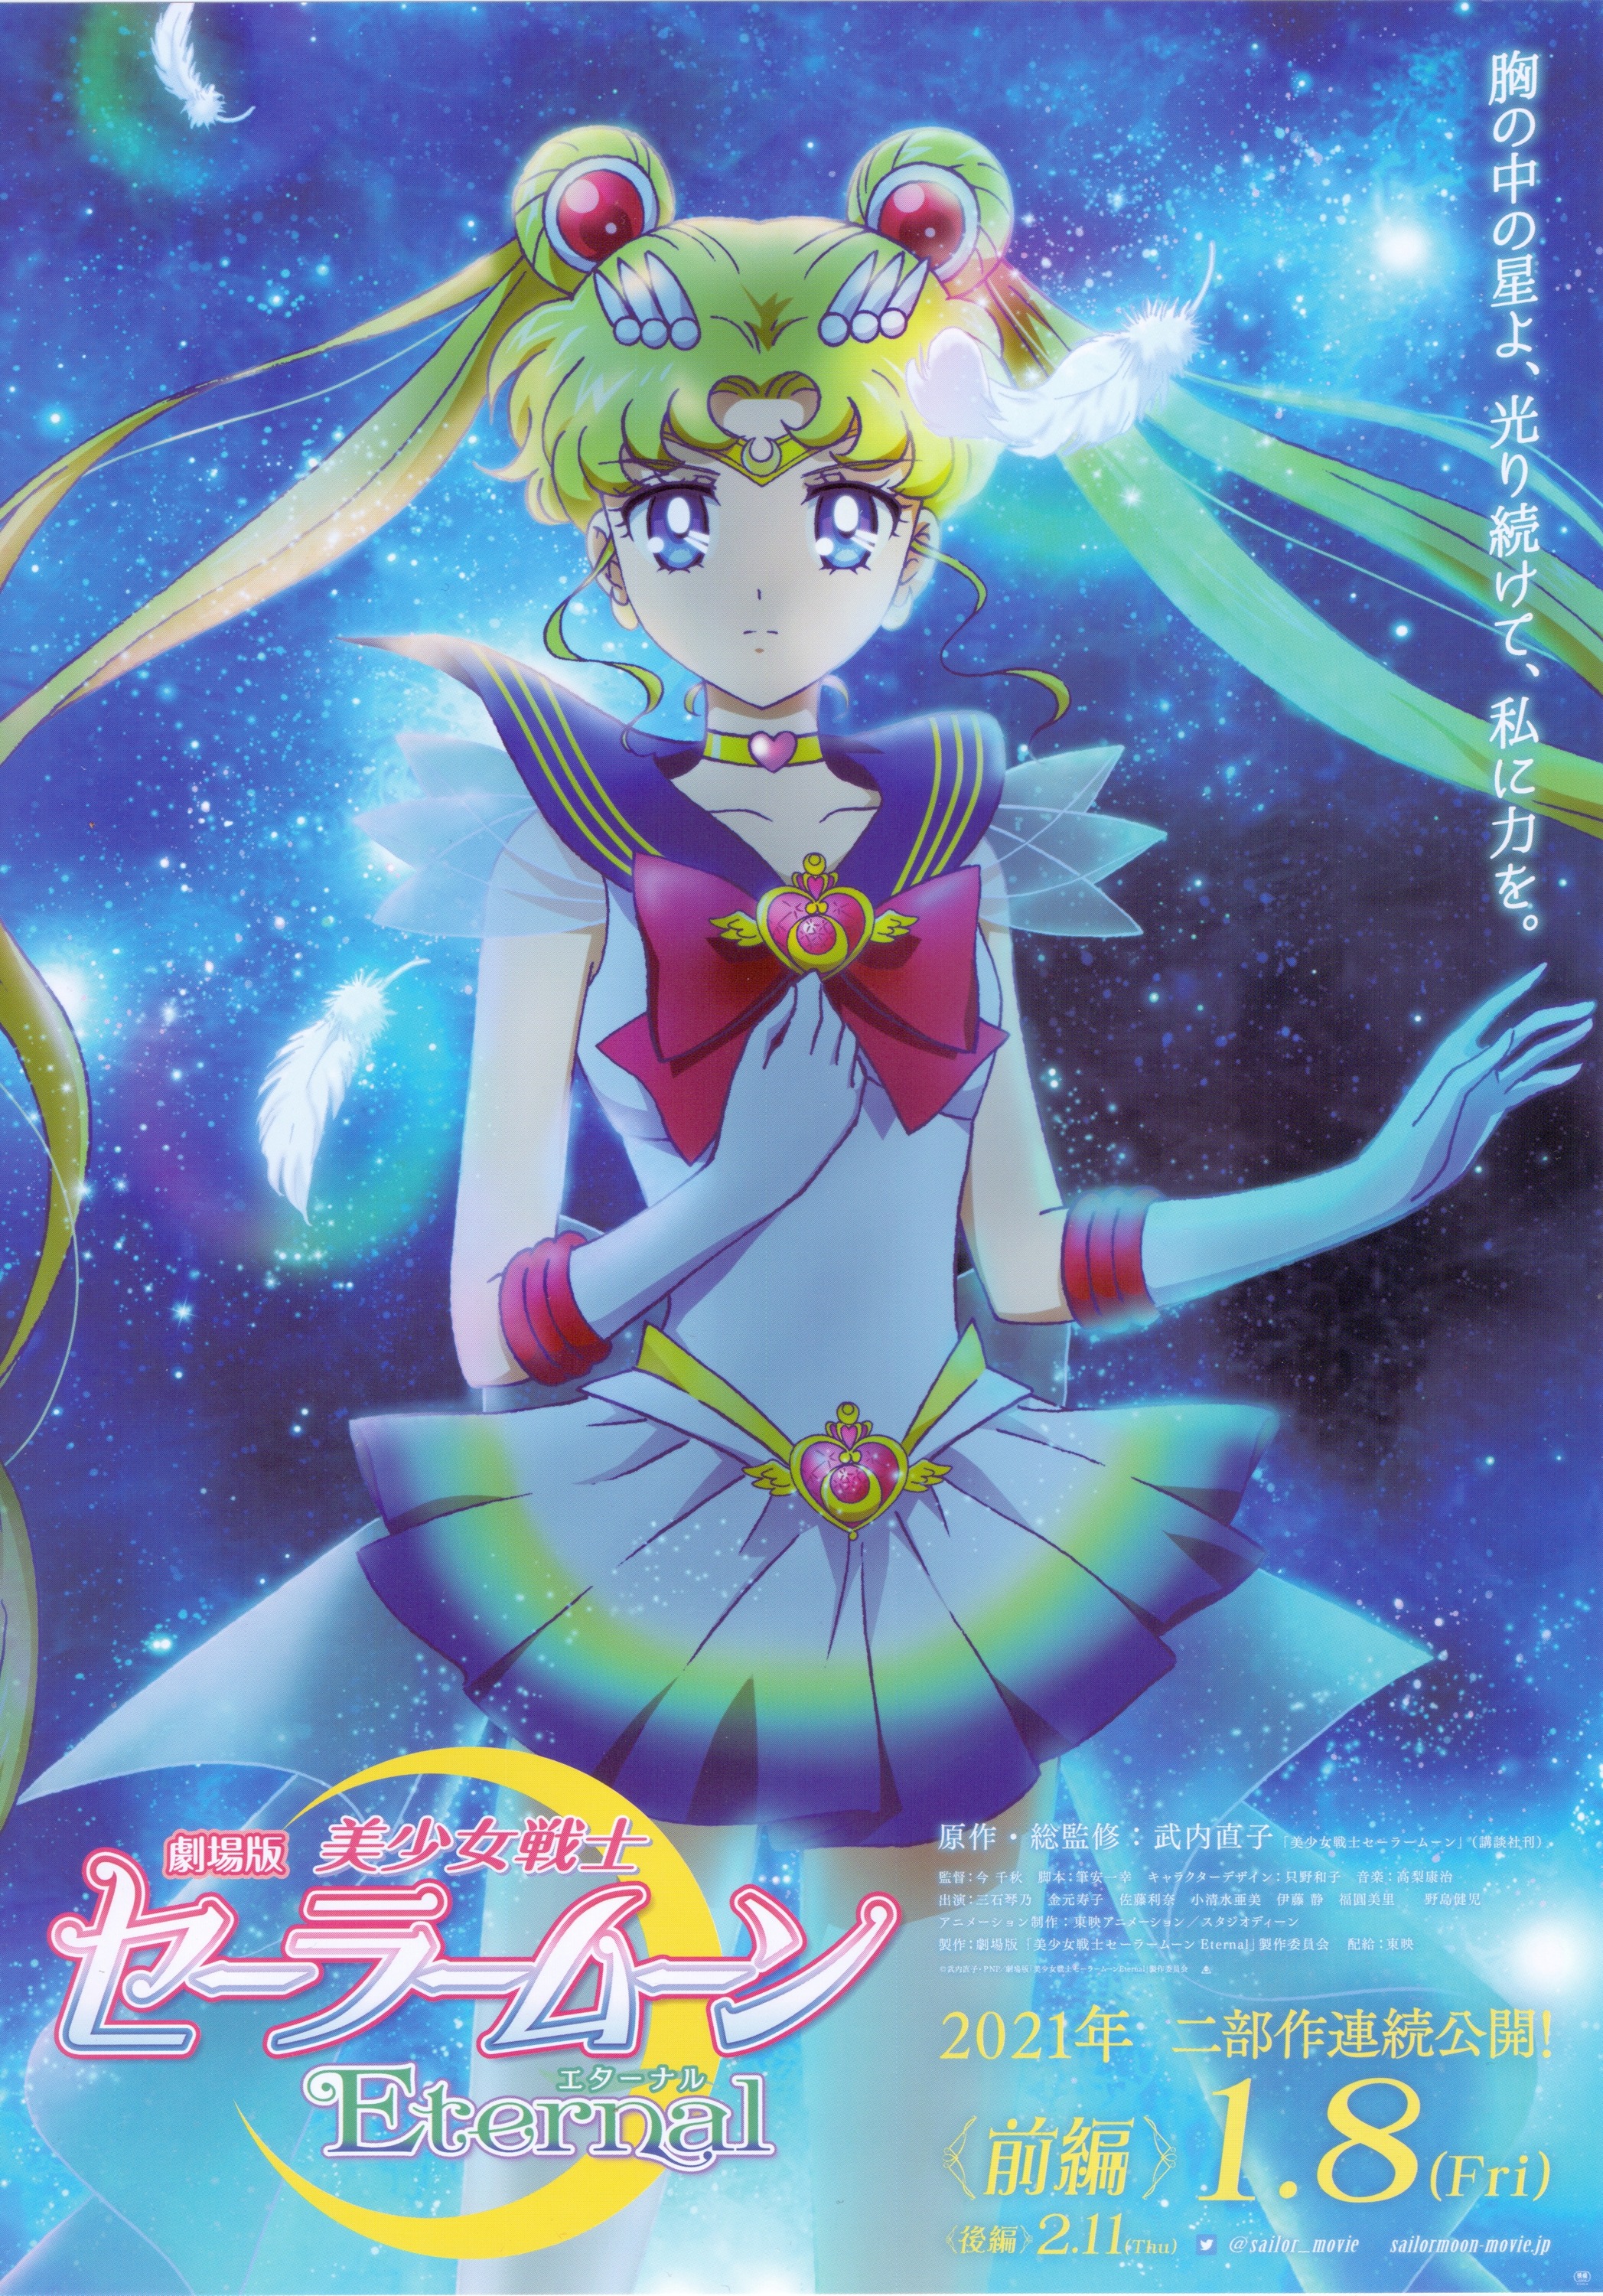 Mega Sized Movie Poster Image for Gekijouban Bishoujo Senshi Sailor Moon Eternal (#1 of 4)